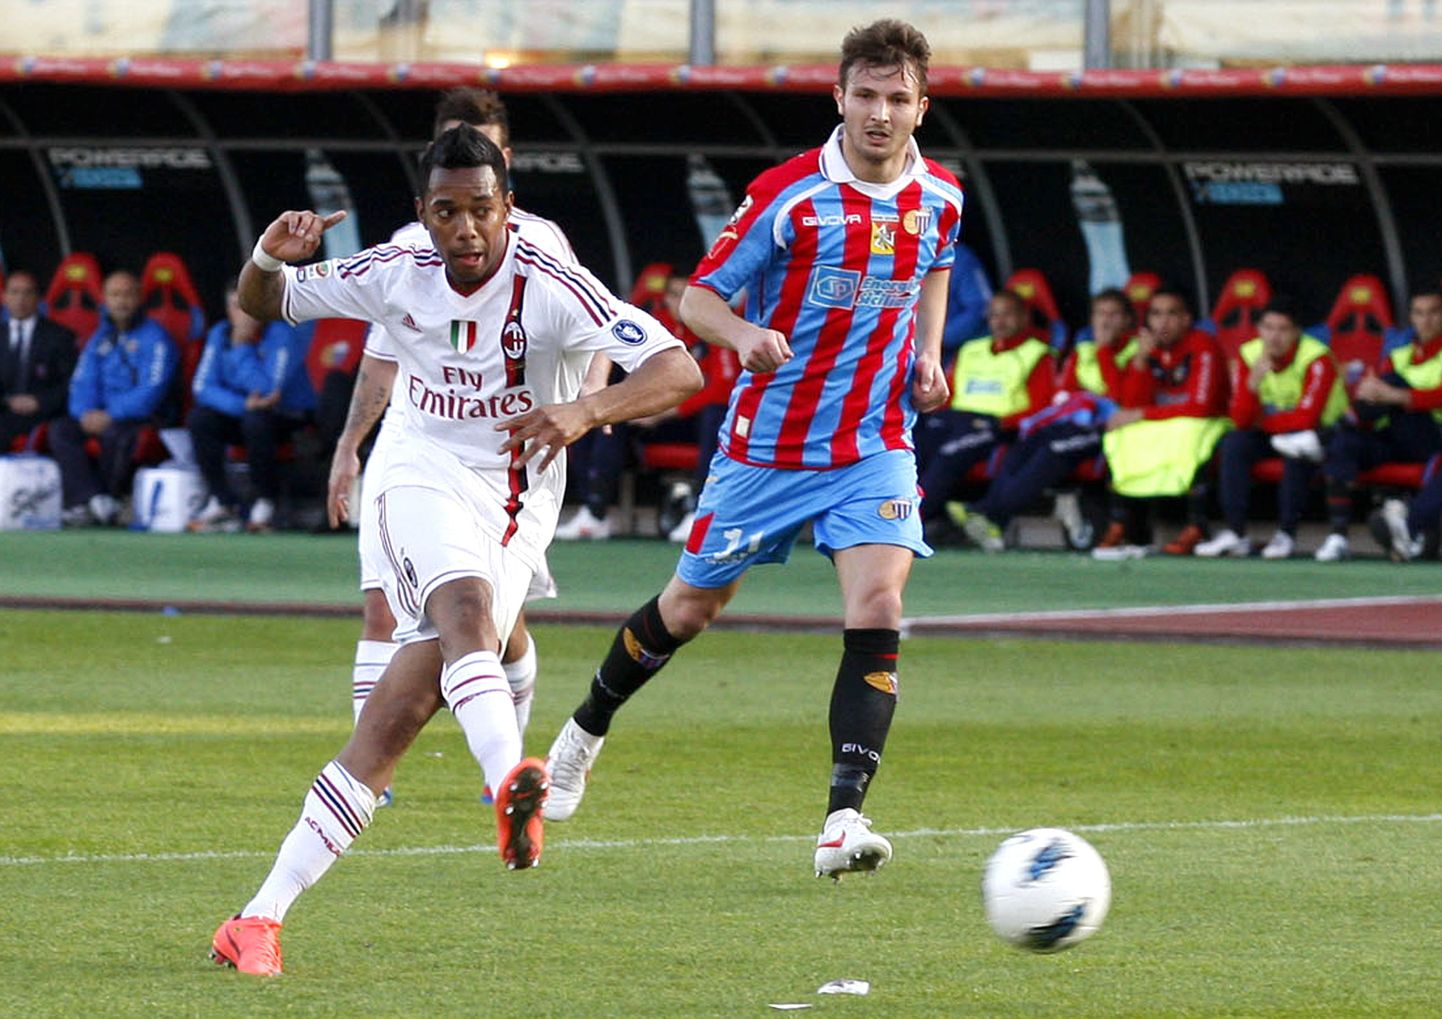 Robinho viis AC Milani juhtima, kuid mäng Catania vastu lõppes 1:1 viigiga.